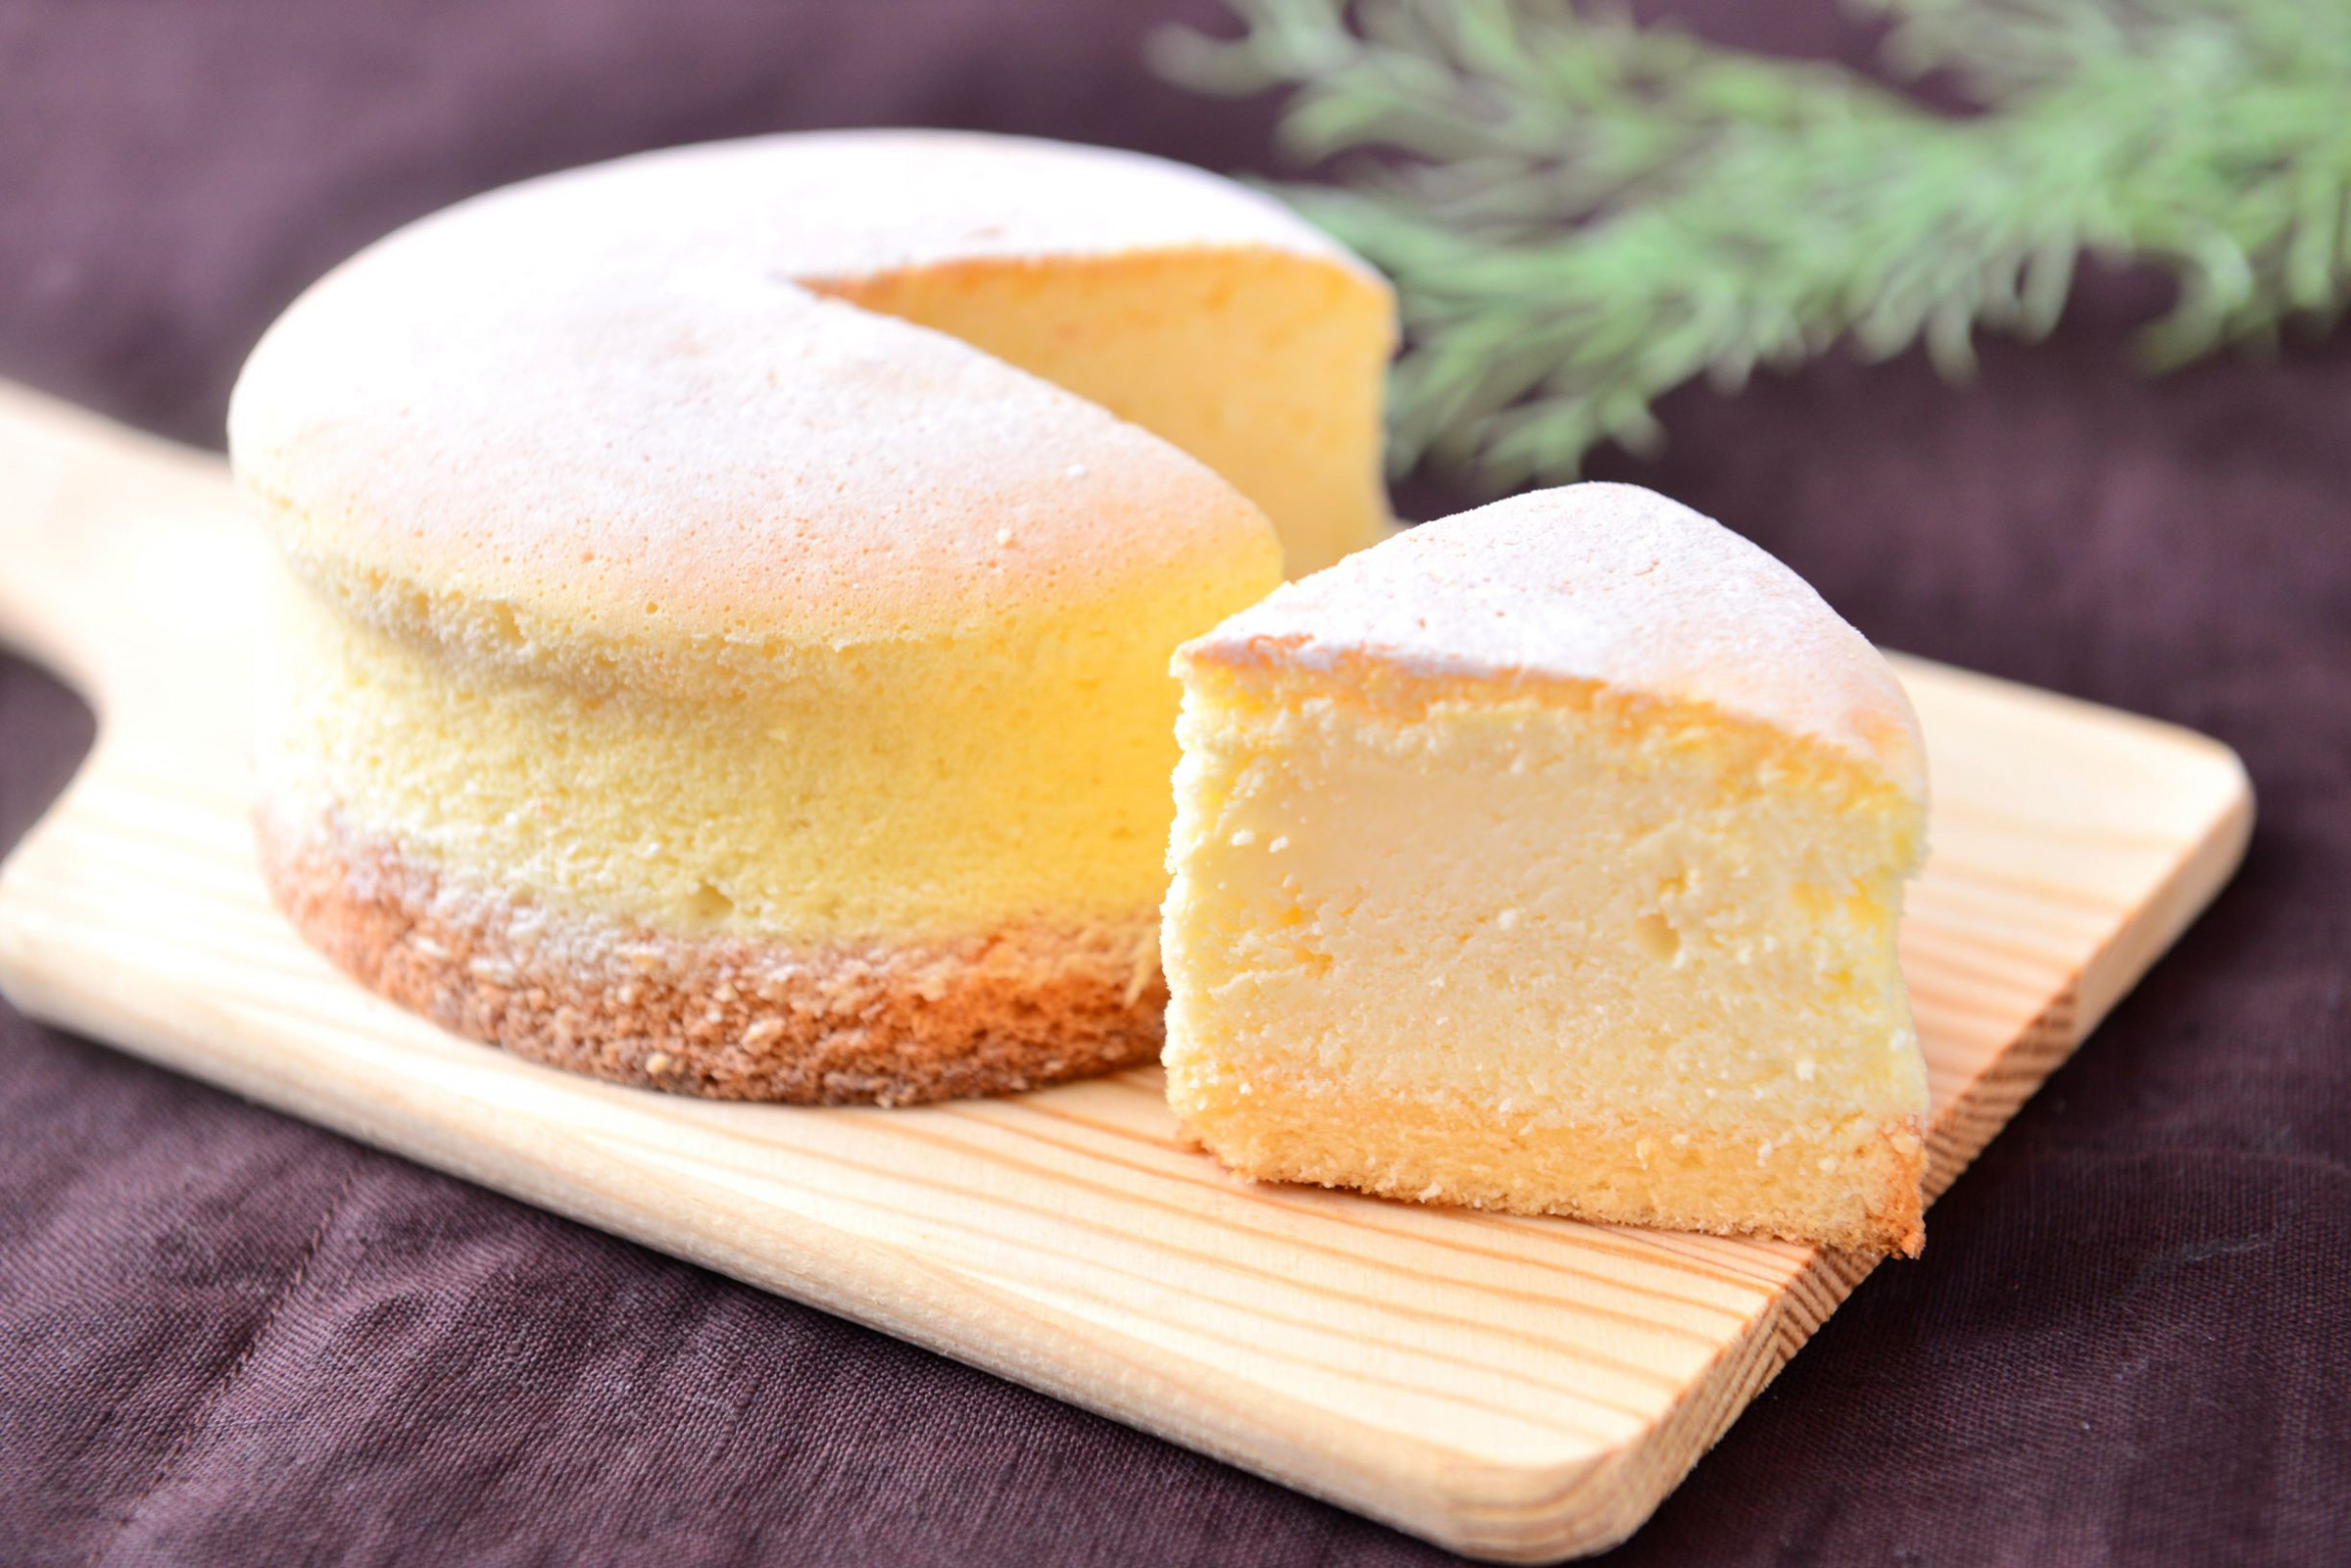 北海道産のクリームチーズと卵黄をたっぷり使用した濃厚なチーズケーキです